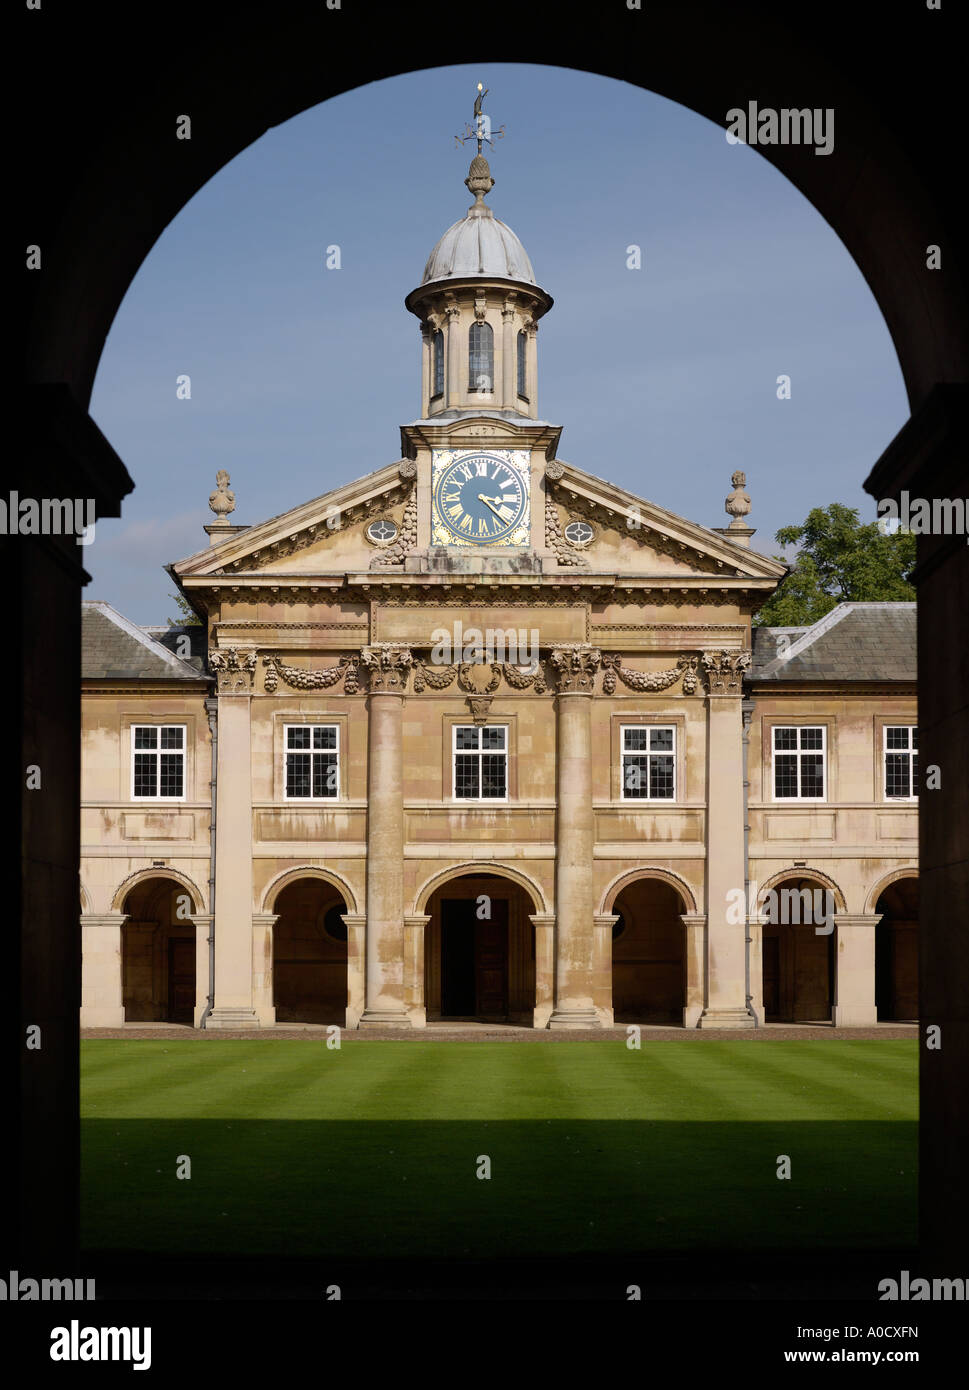 Emmanuel College Cambridge seen through entrance arch Stock Photo